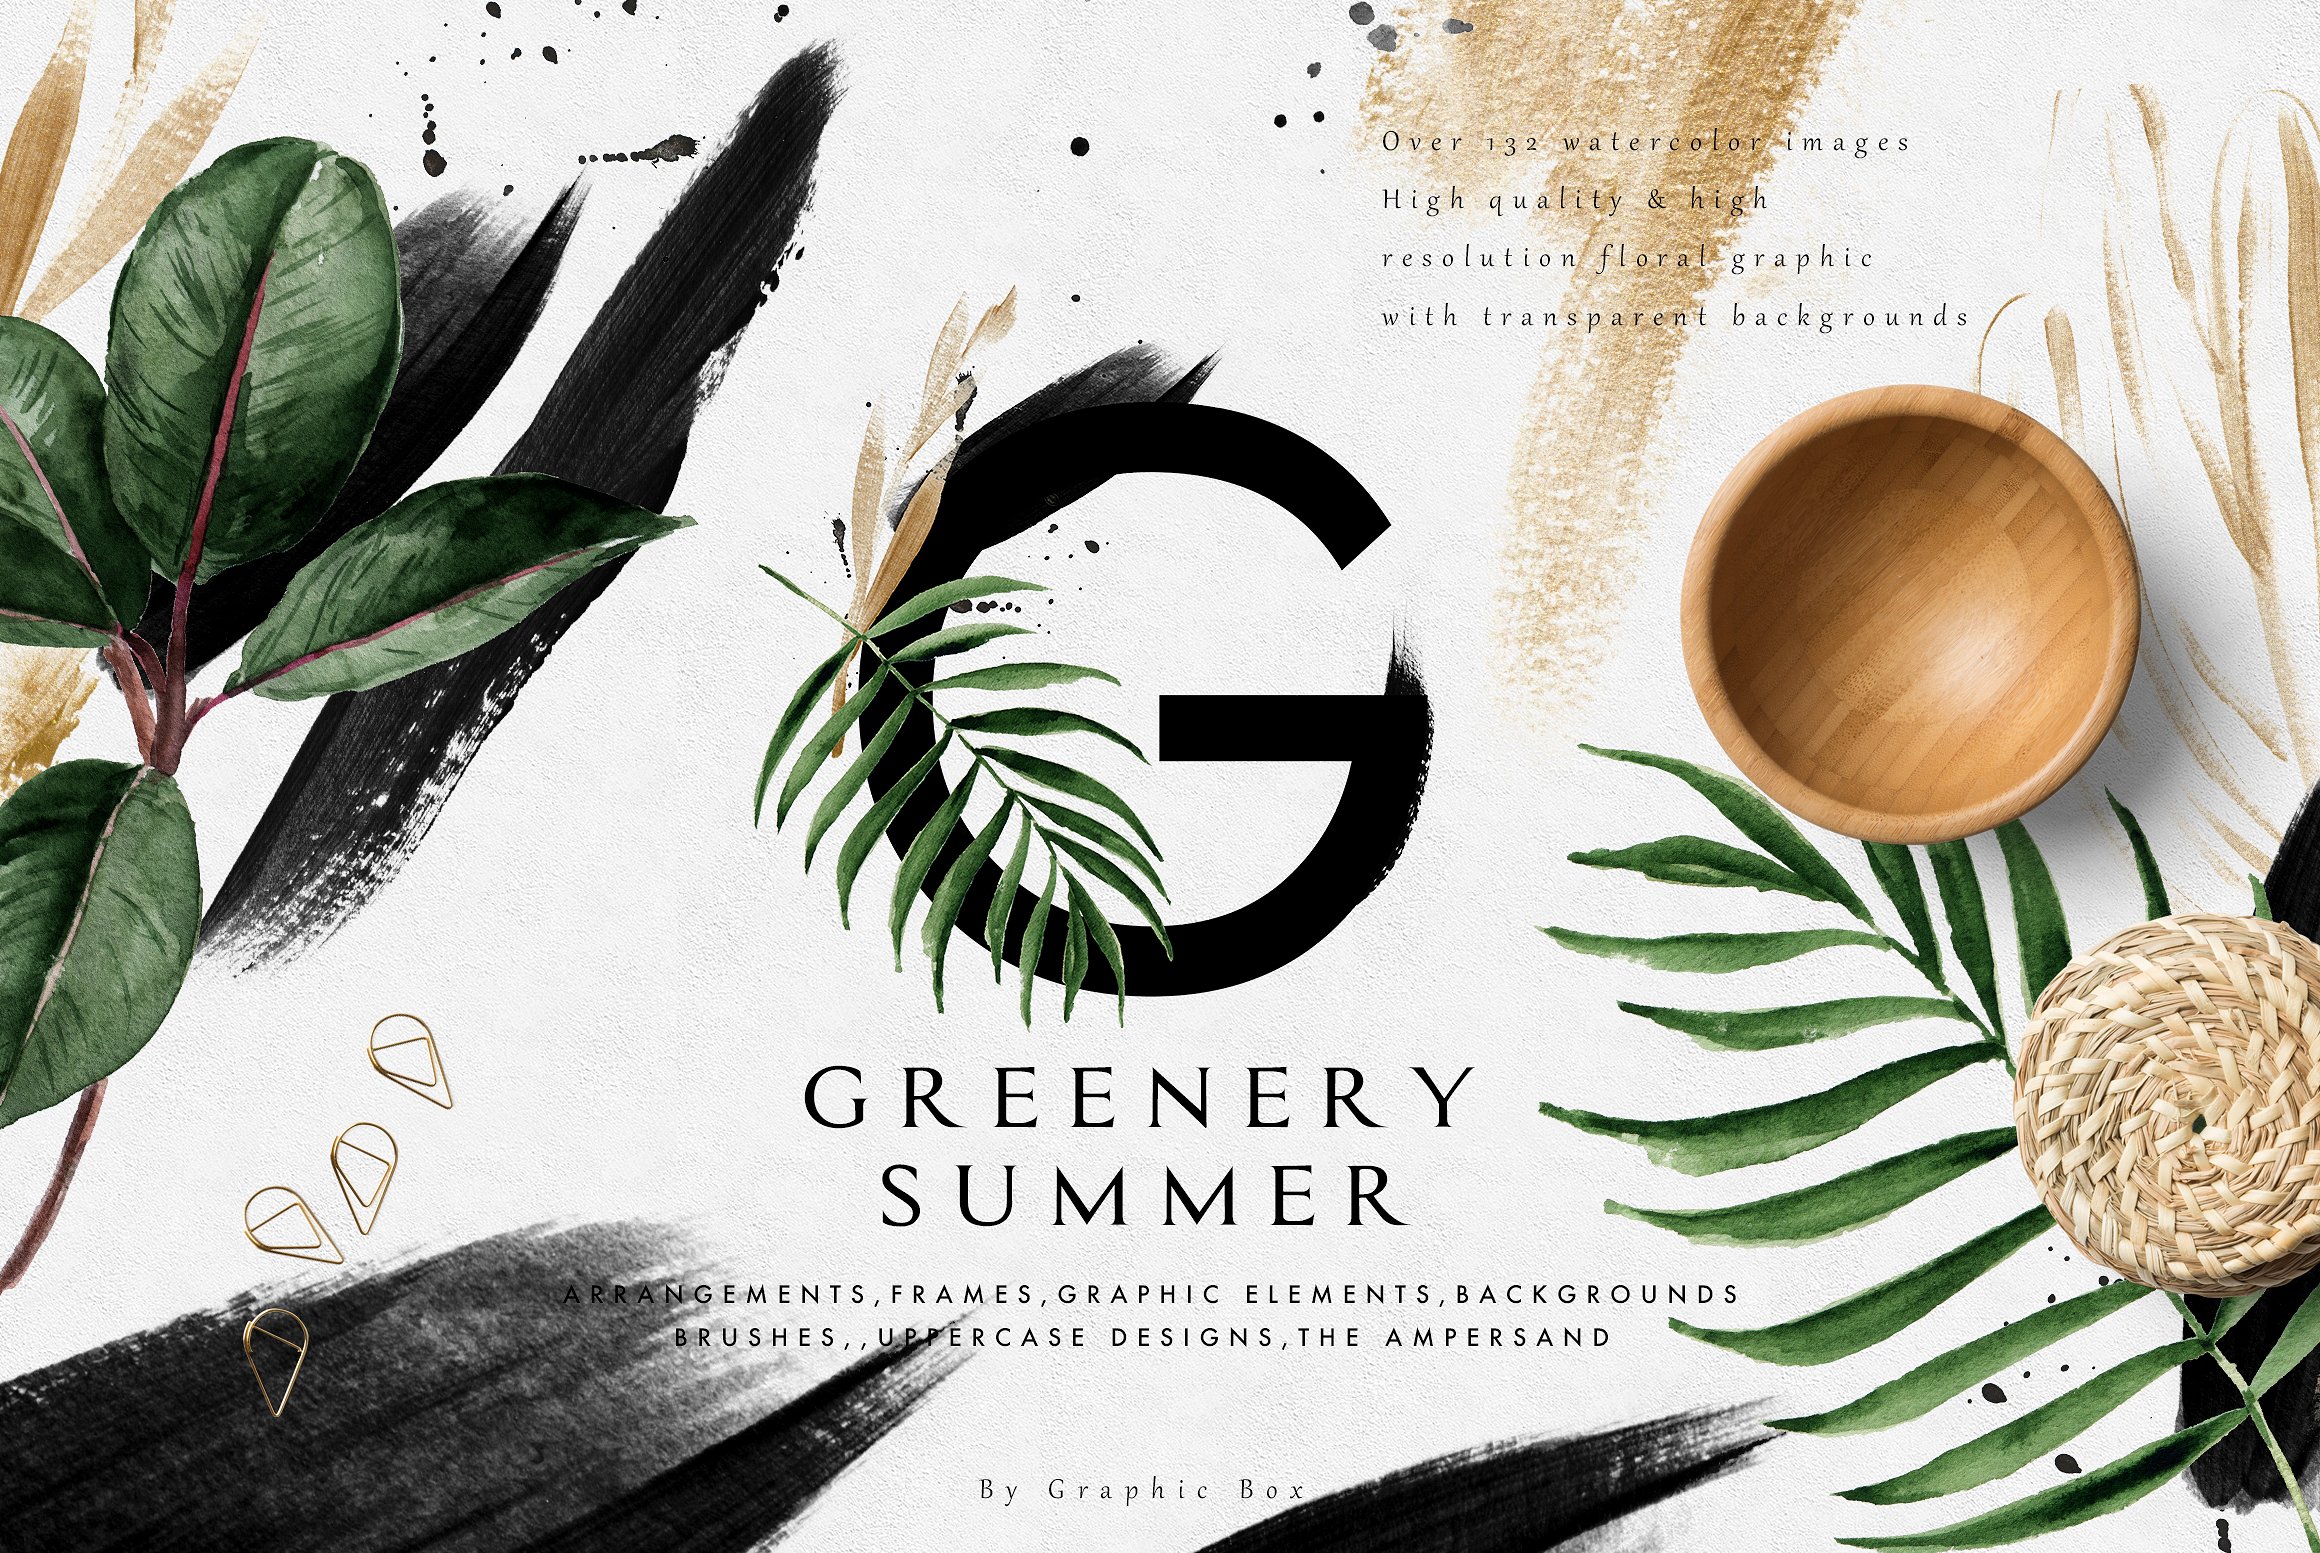 高品质水彩风格的夏季绿叶素材包合辑 Greenery Sum